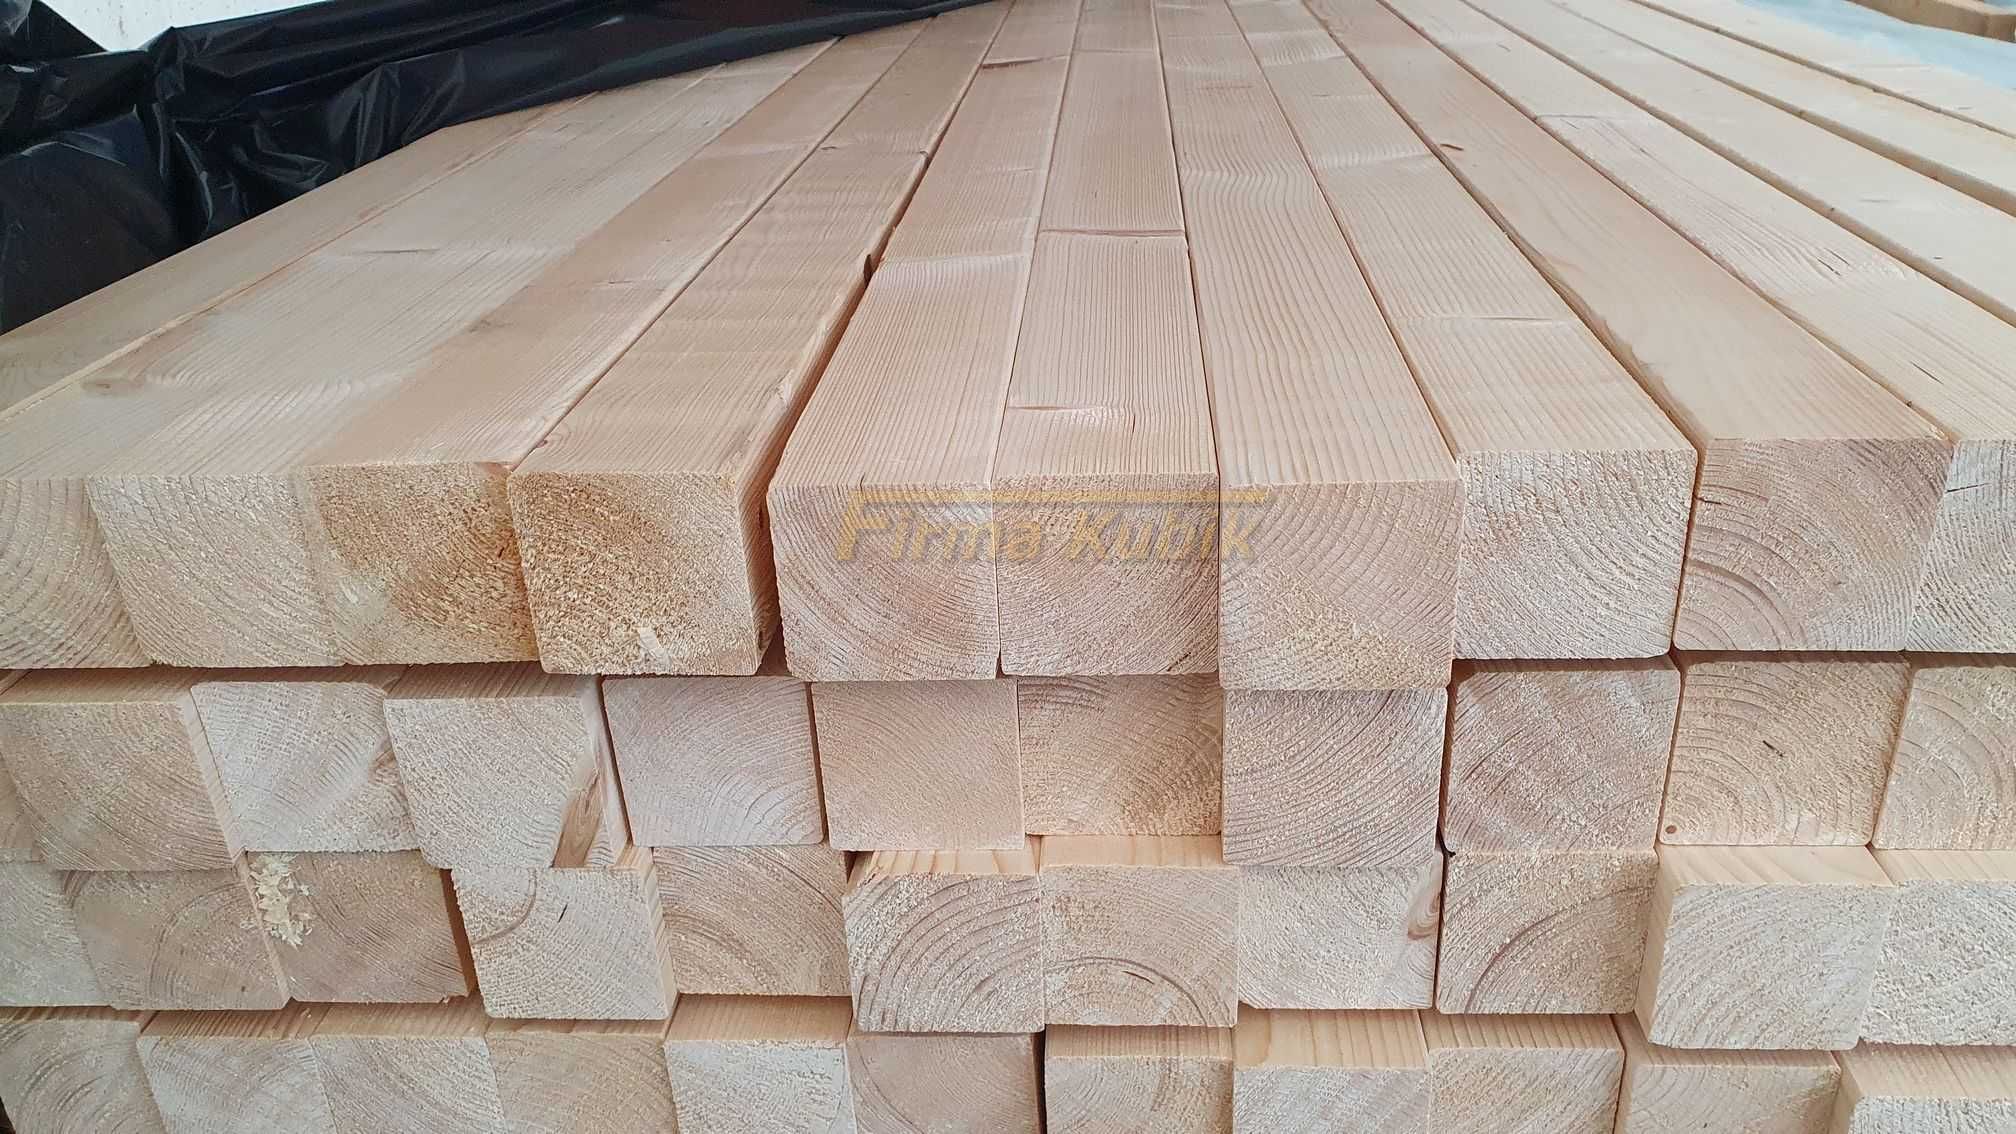 Kantówka słupek drewniany drewno konstrukcyjne 70x70 świerk strugany